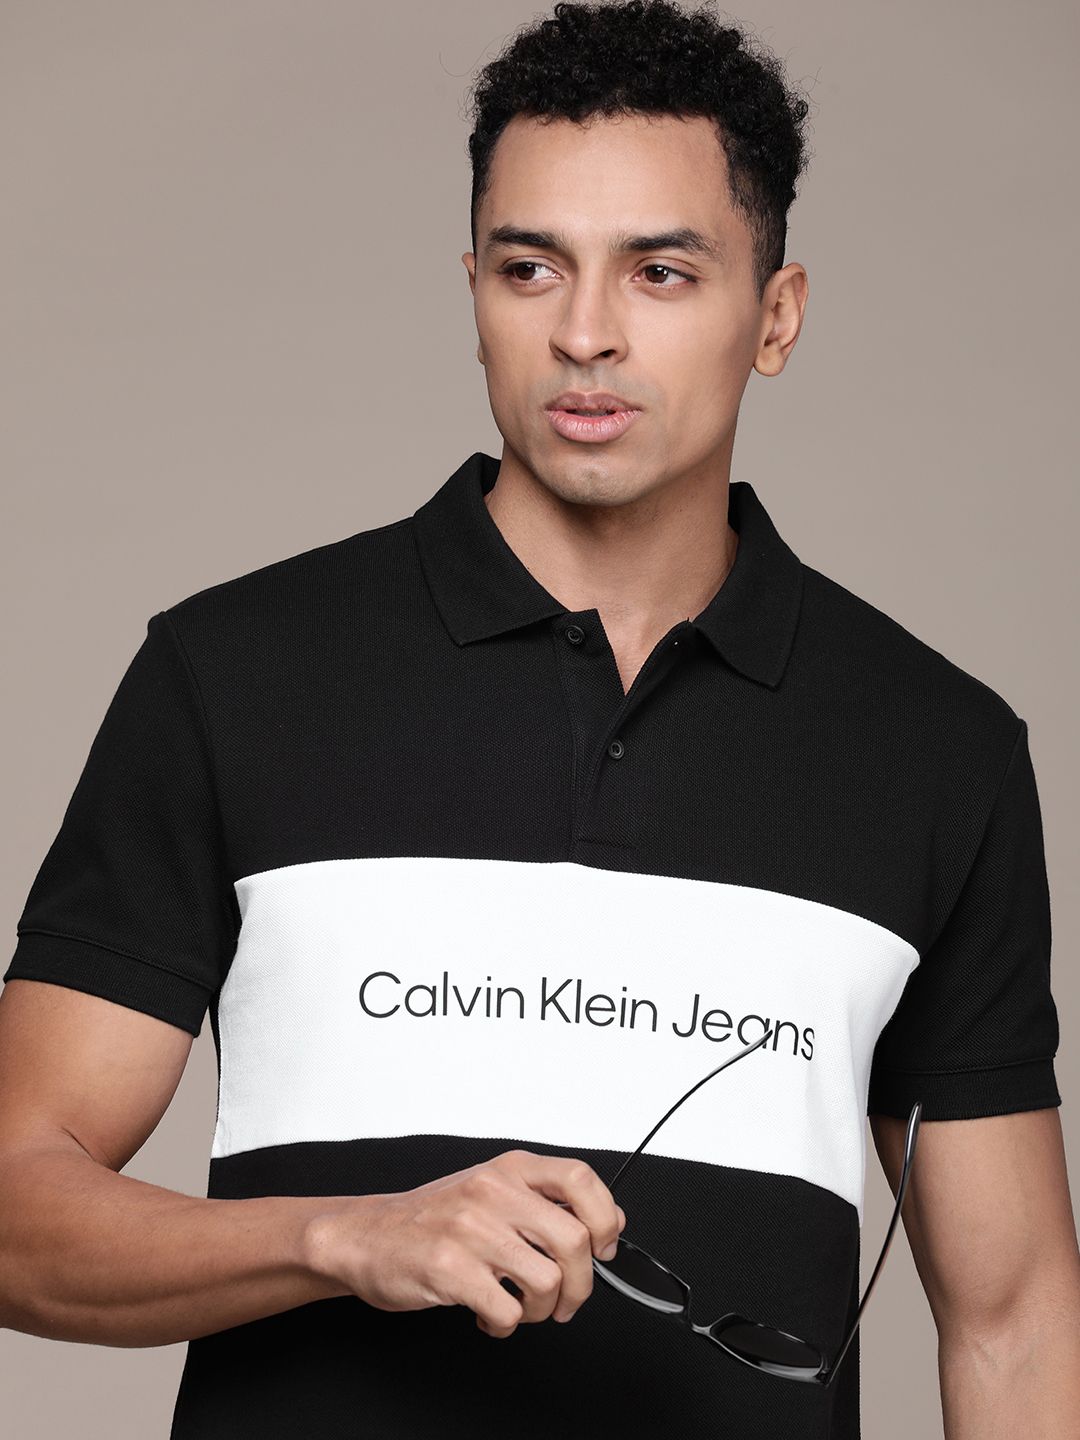 Calvin Klein Jeans Brand Logo Printed Colourblocked Polo Collar Pure Cotton T-shirt